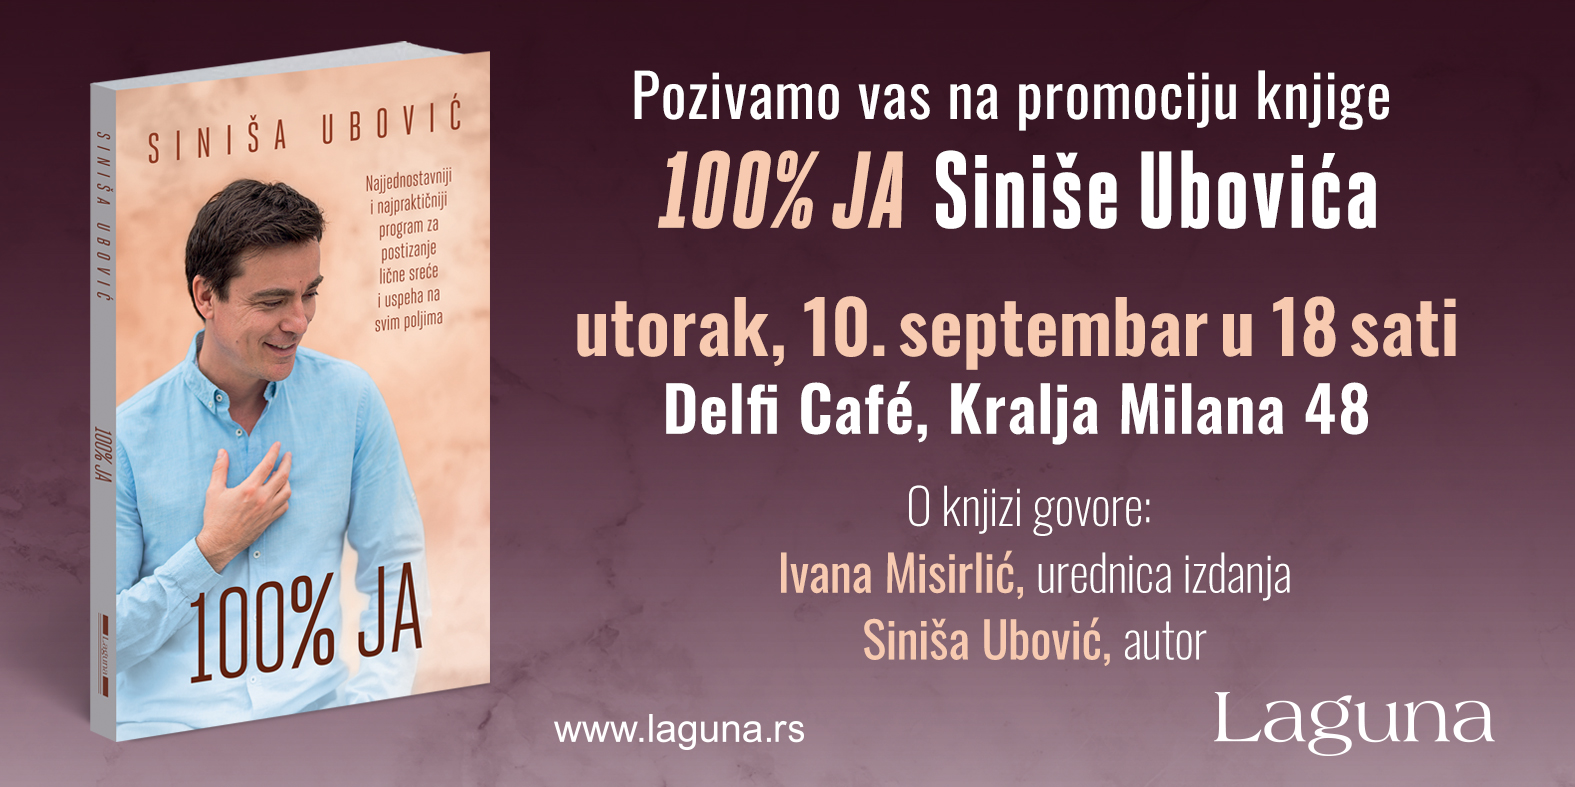 Promocija knjige Sinie Ubovia &100% ja&, foto: promo